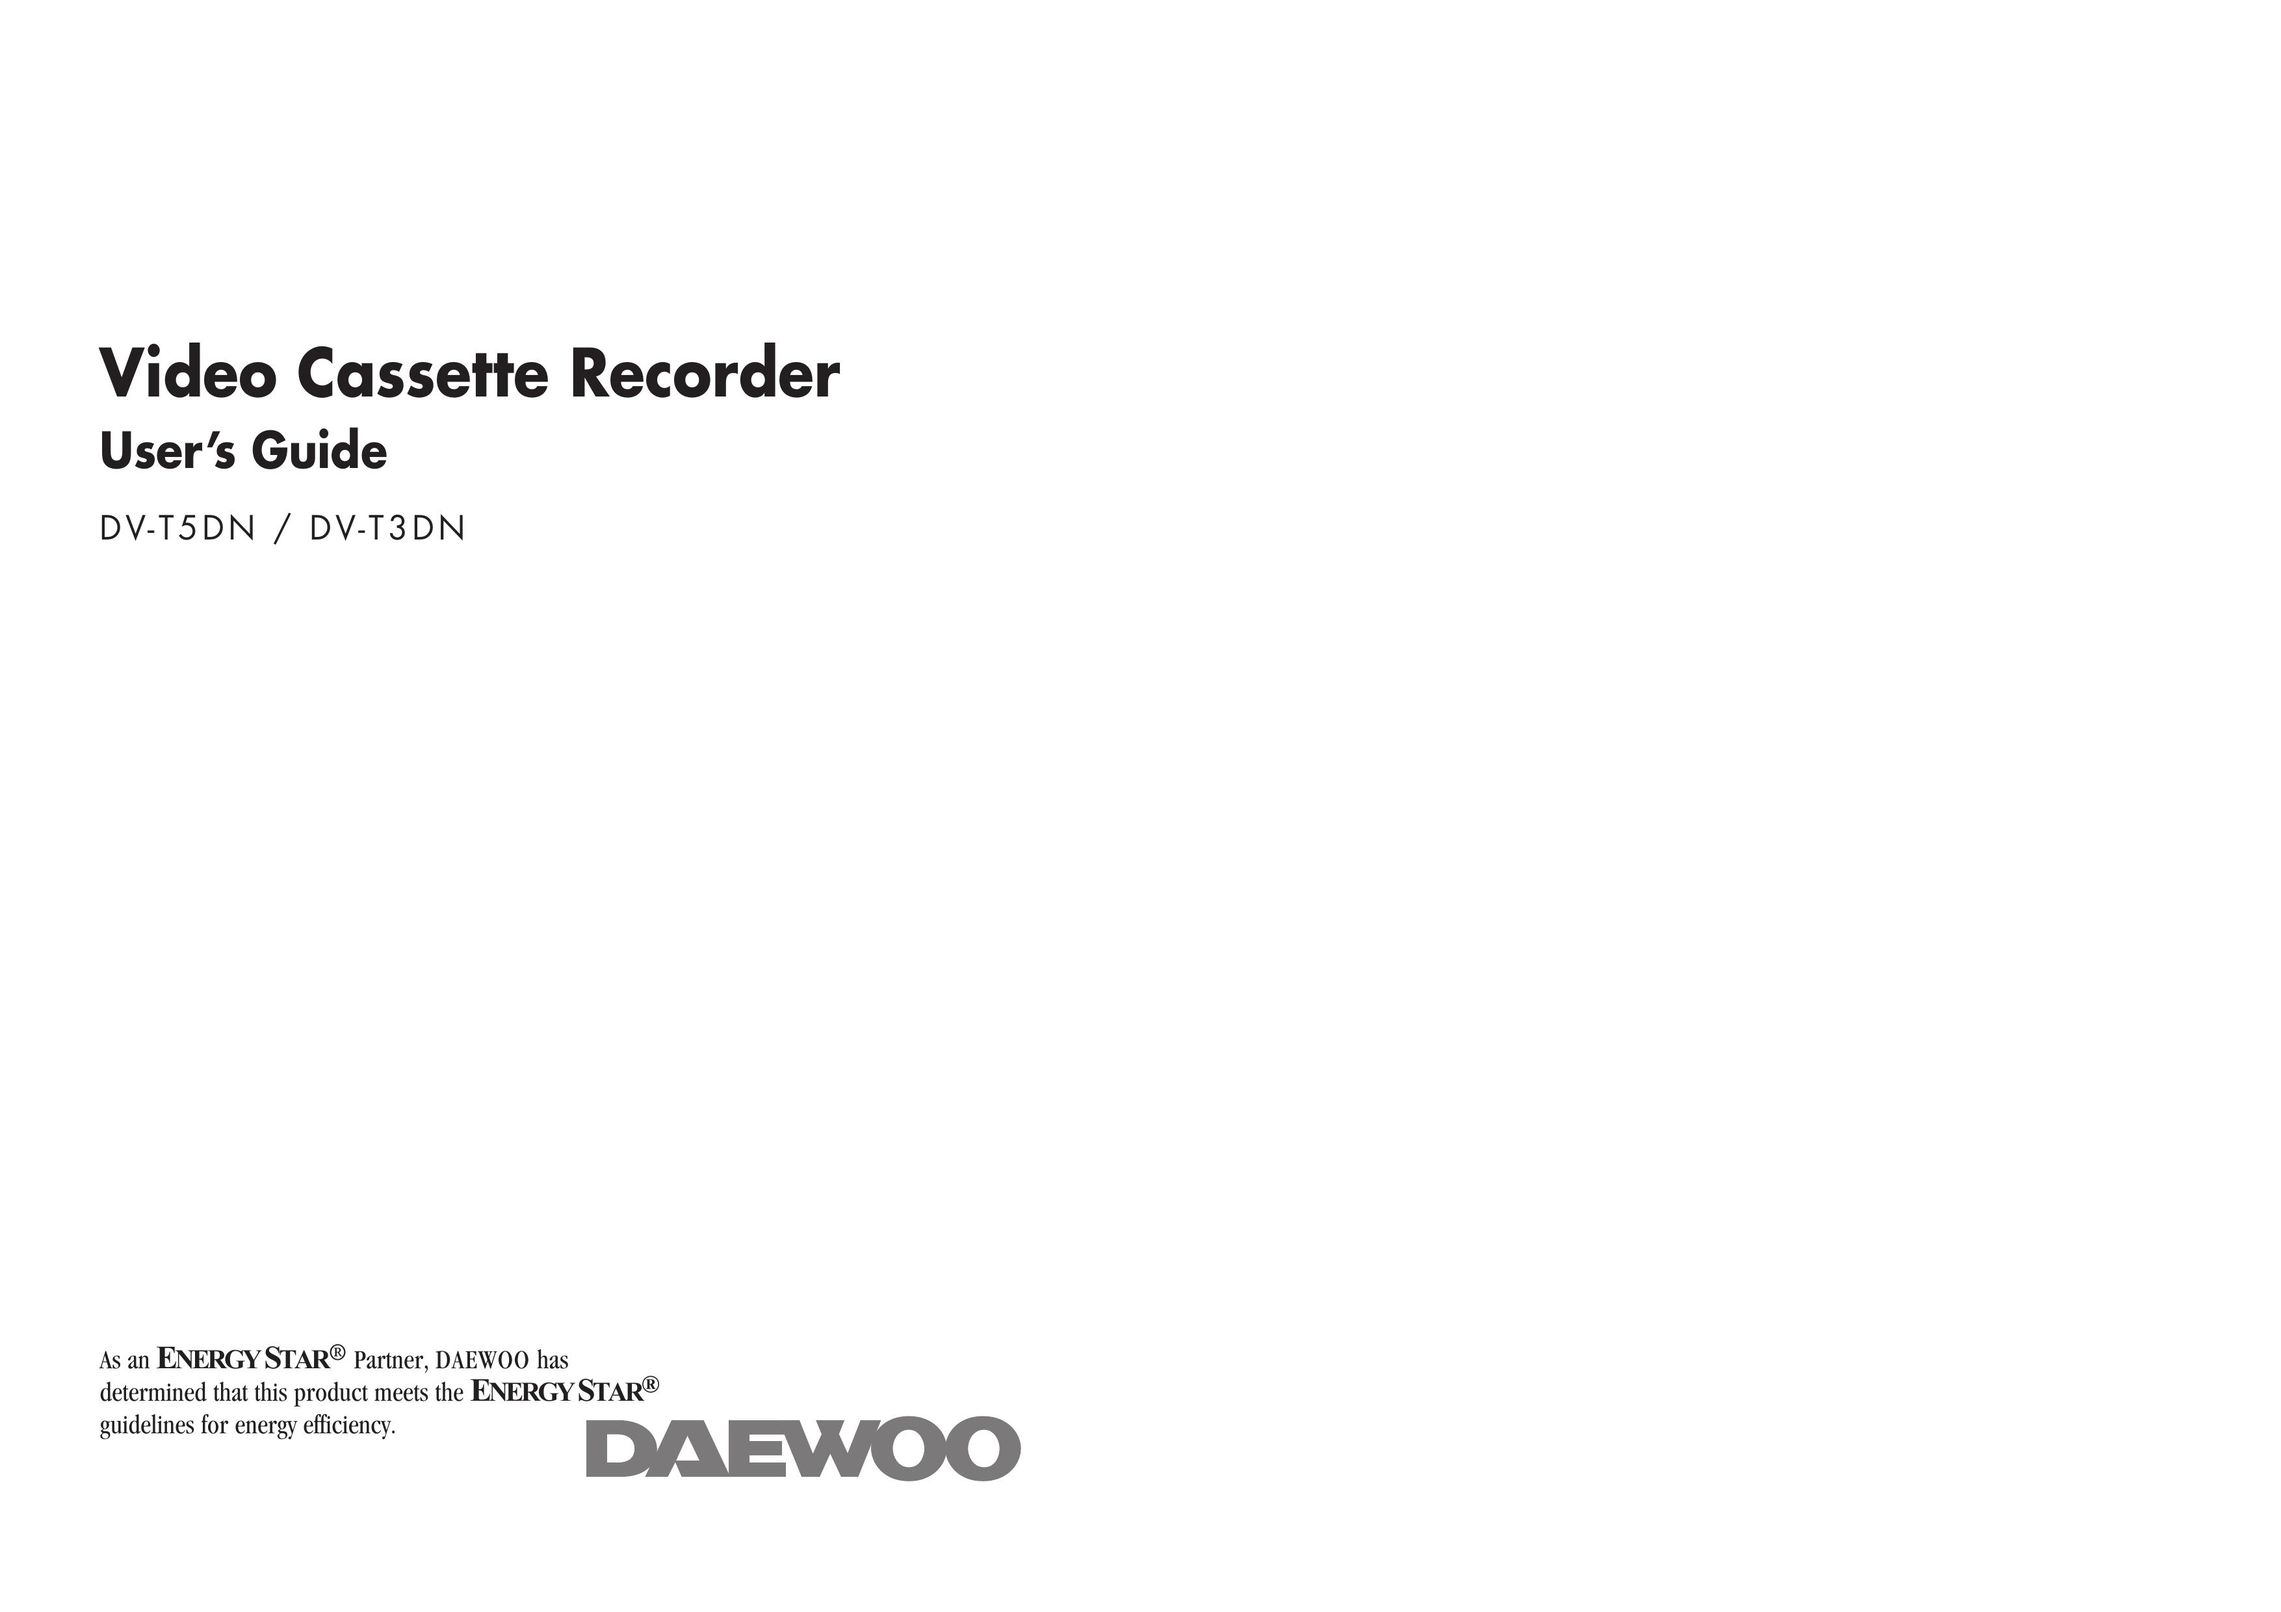 Daewoo DV-T3DN VCR User Manual